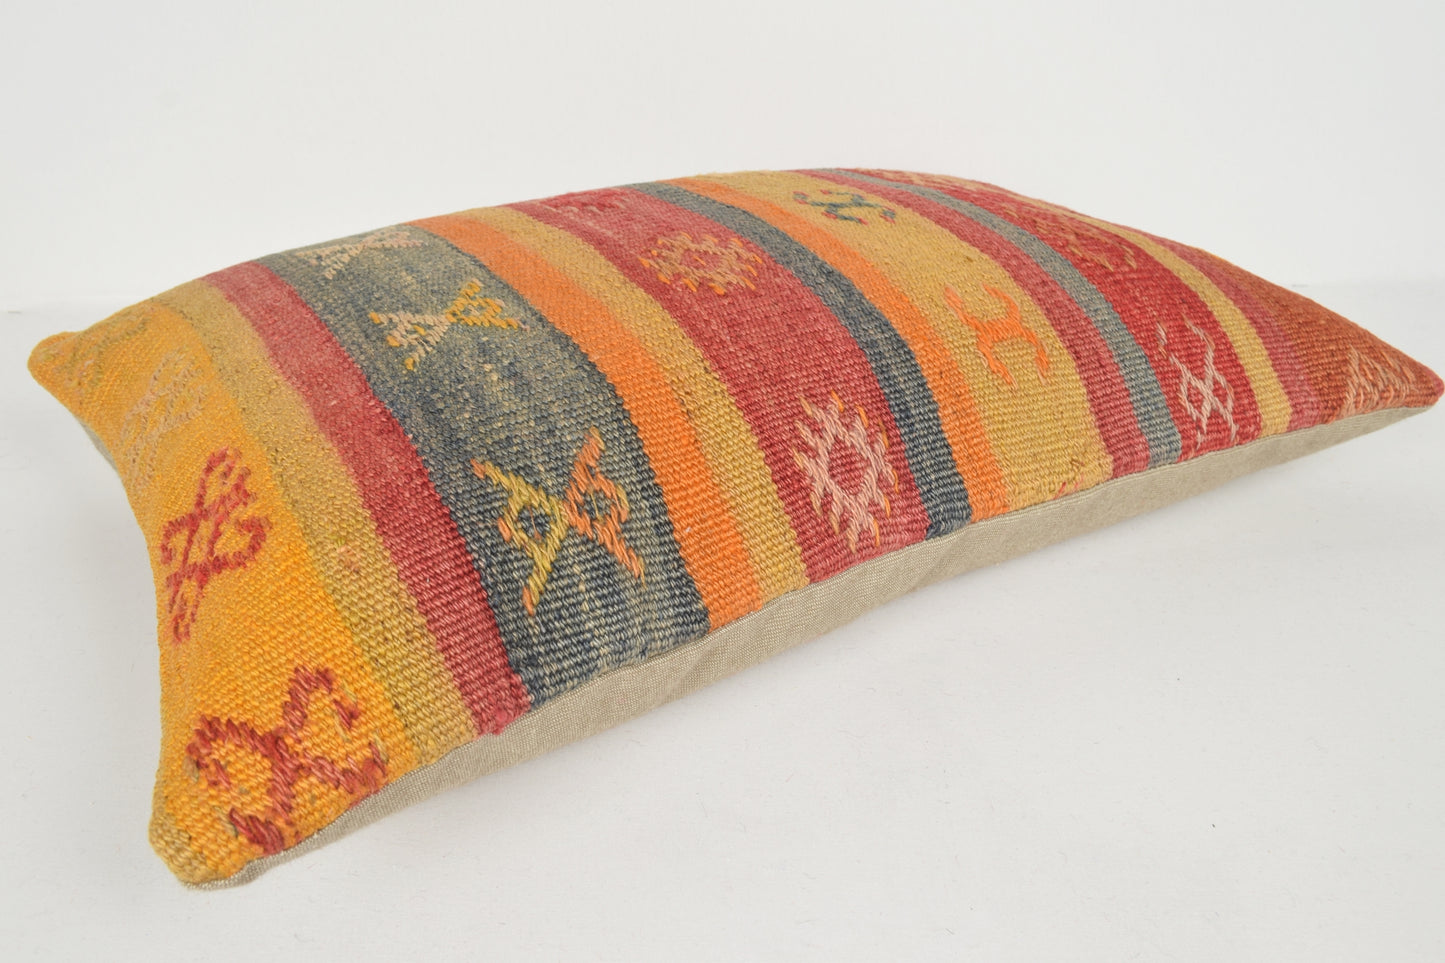 Antique Turkish Kilim Rugs for Sale Pillow 16x24 " 40x60 cm. E00624